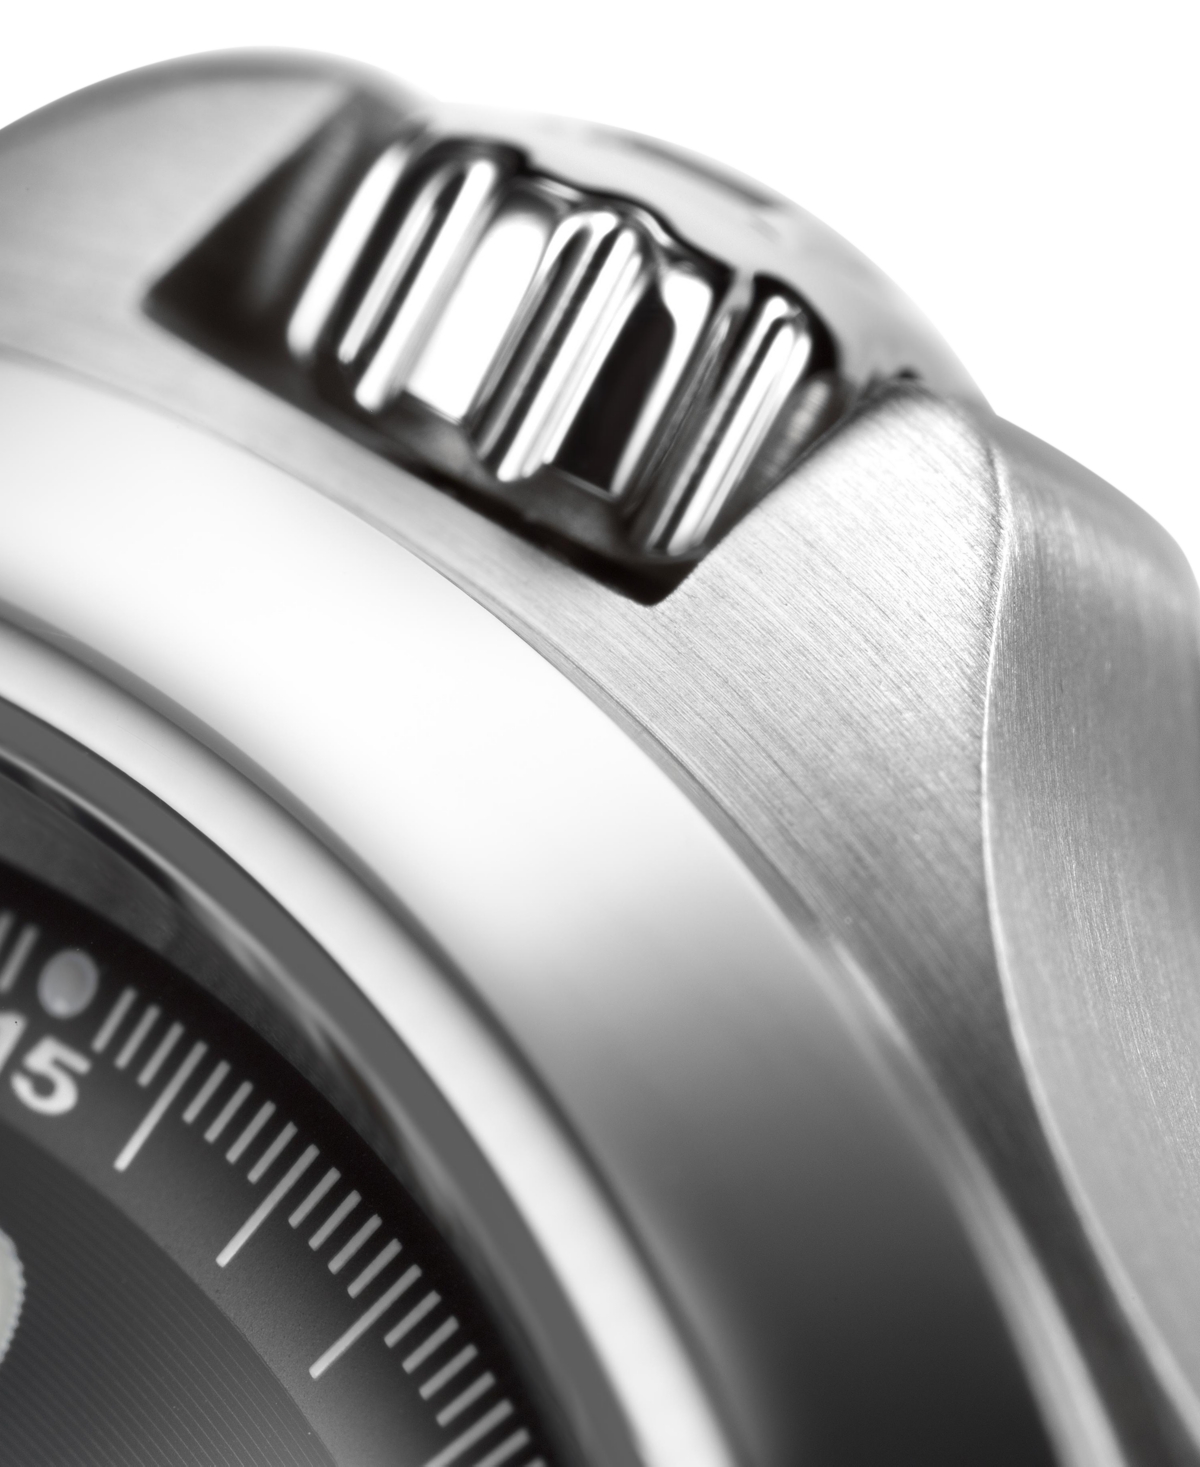 Shop Hamilton Men's Swiss Automatic Khaki King Stainless Steel Bracelet Watch 40mm H64455133 In Silver